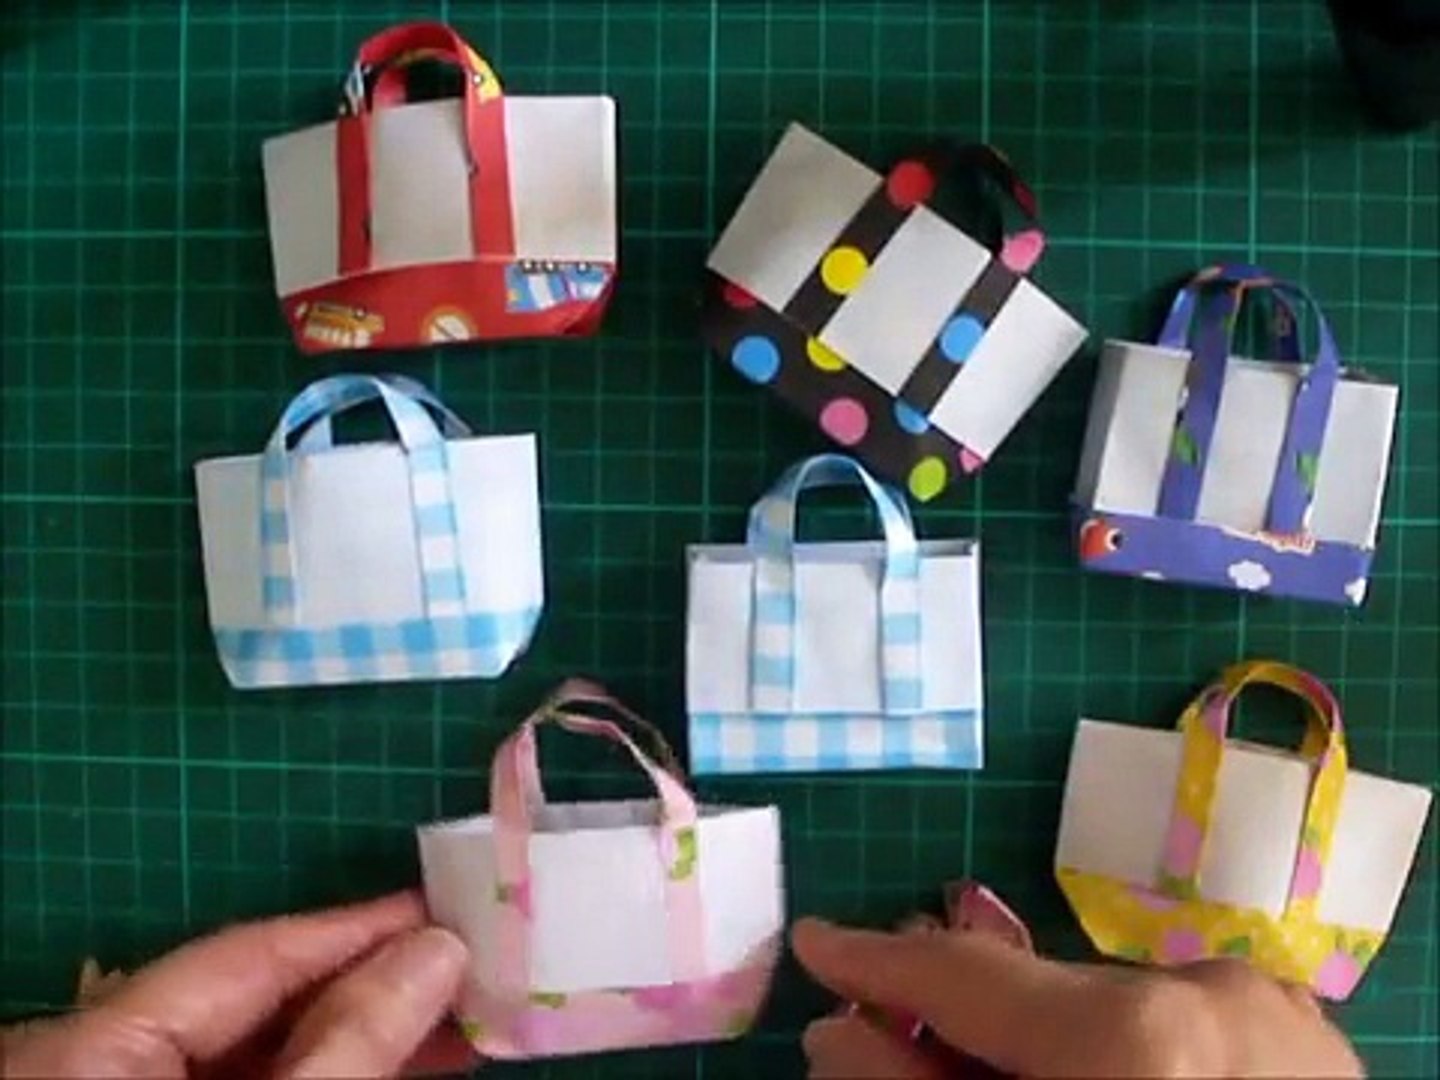 折り紙 トートバック2 簡単な折り方 Niceno1 Origami Tote Bag Tutorial 6tuv1ka1kr8 Video Dailymotion